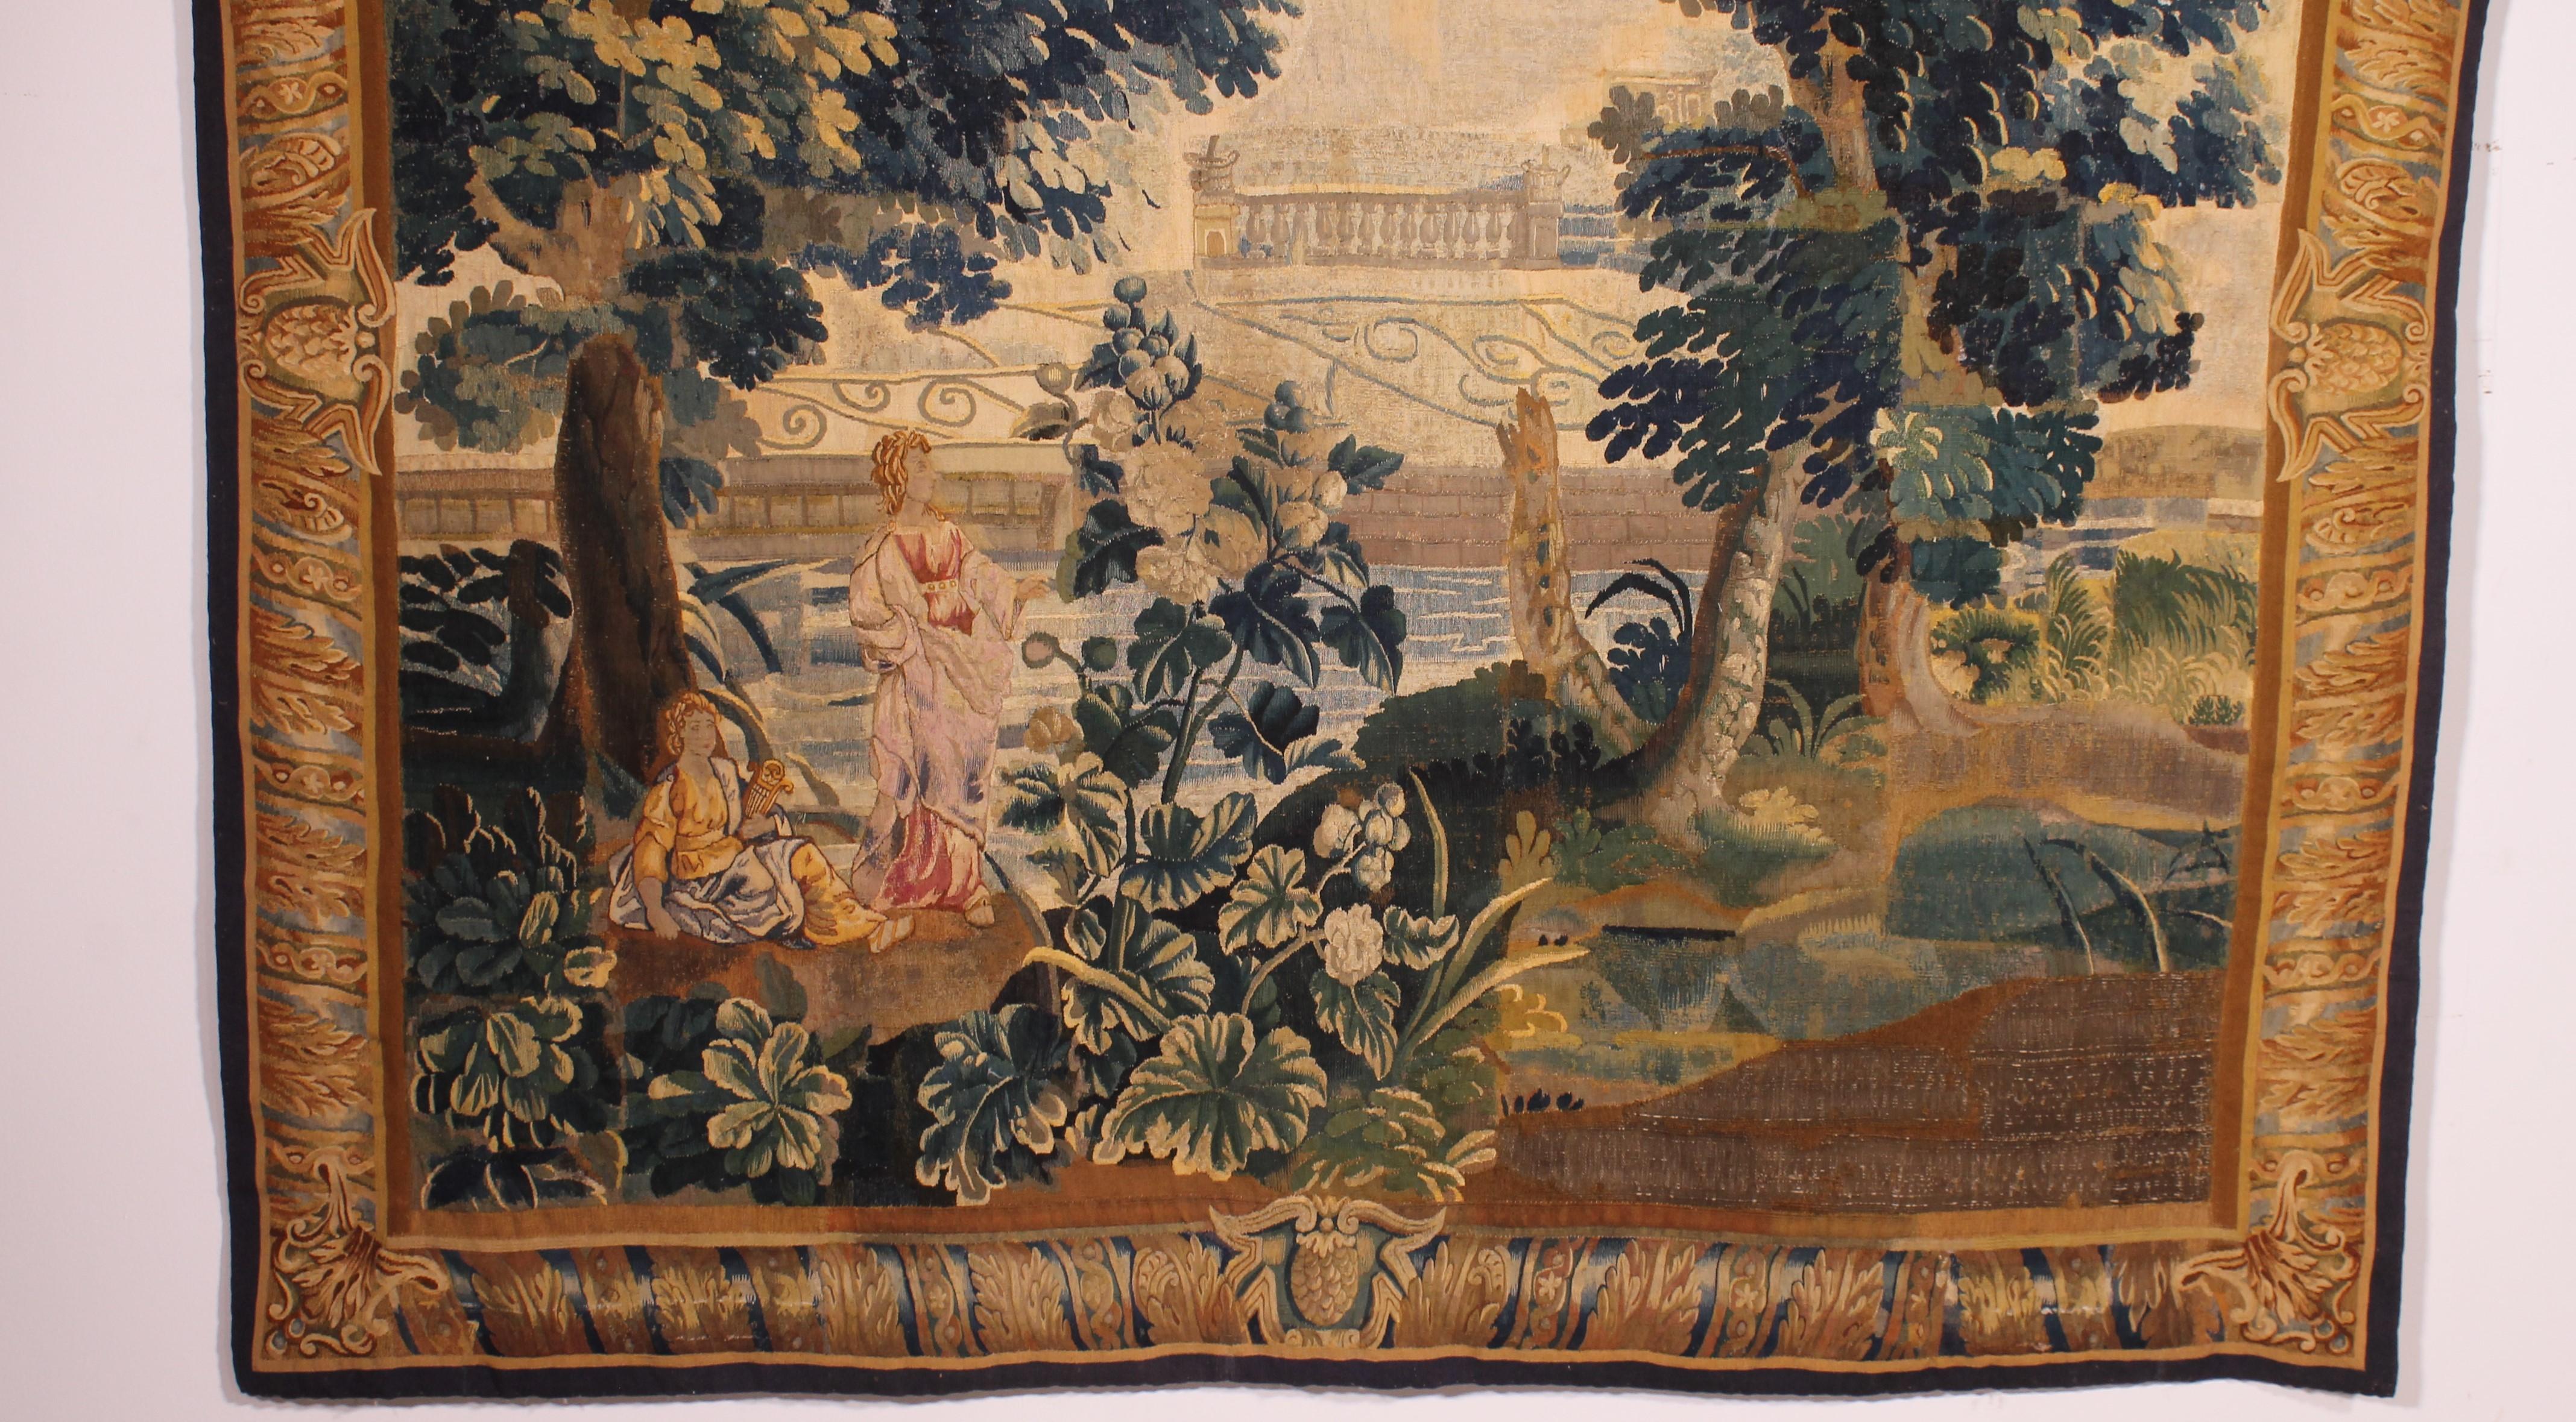 Wunderschöner Brüsseler Wandteppich aus Wolle und Seide aus dem 18.

Sehr schöner Viertelstich-Wandteppich, der einen Teich darstellt, auf dem ein junger Musiker mit einer Leier unter dem Arm sitzt. Neben ihm steht eine Frau in einem rosa Kleid und